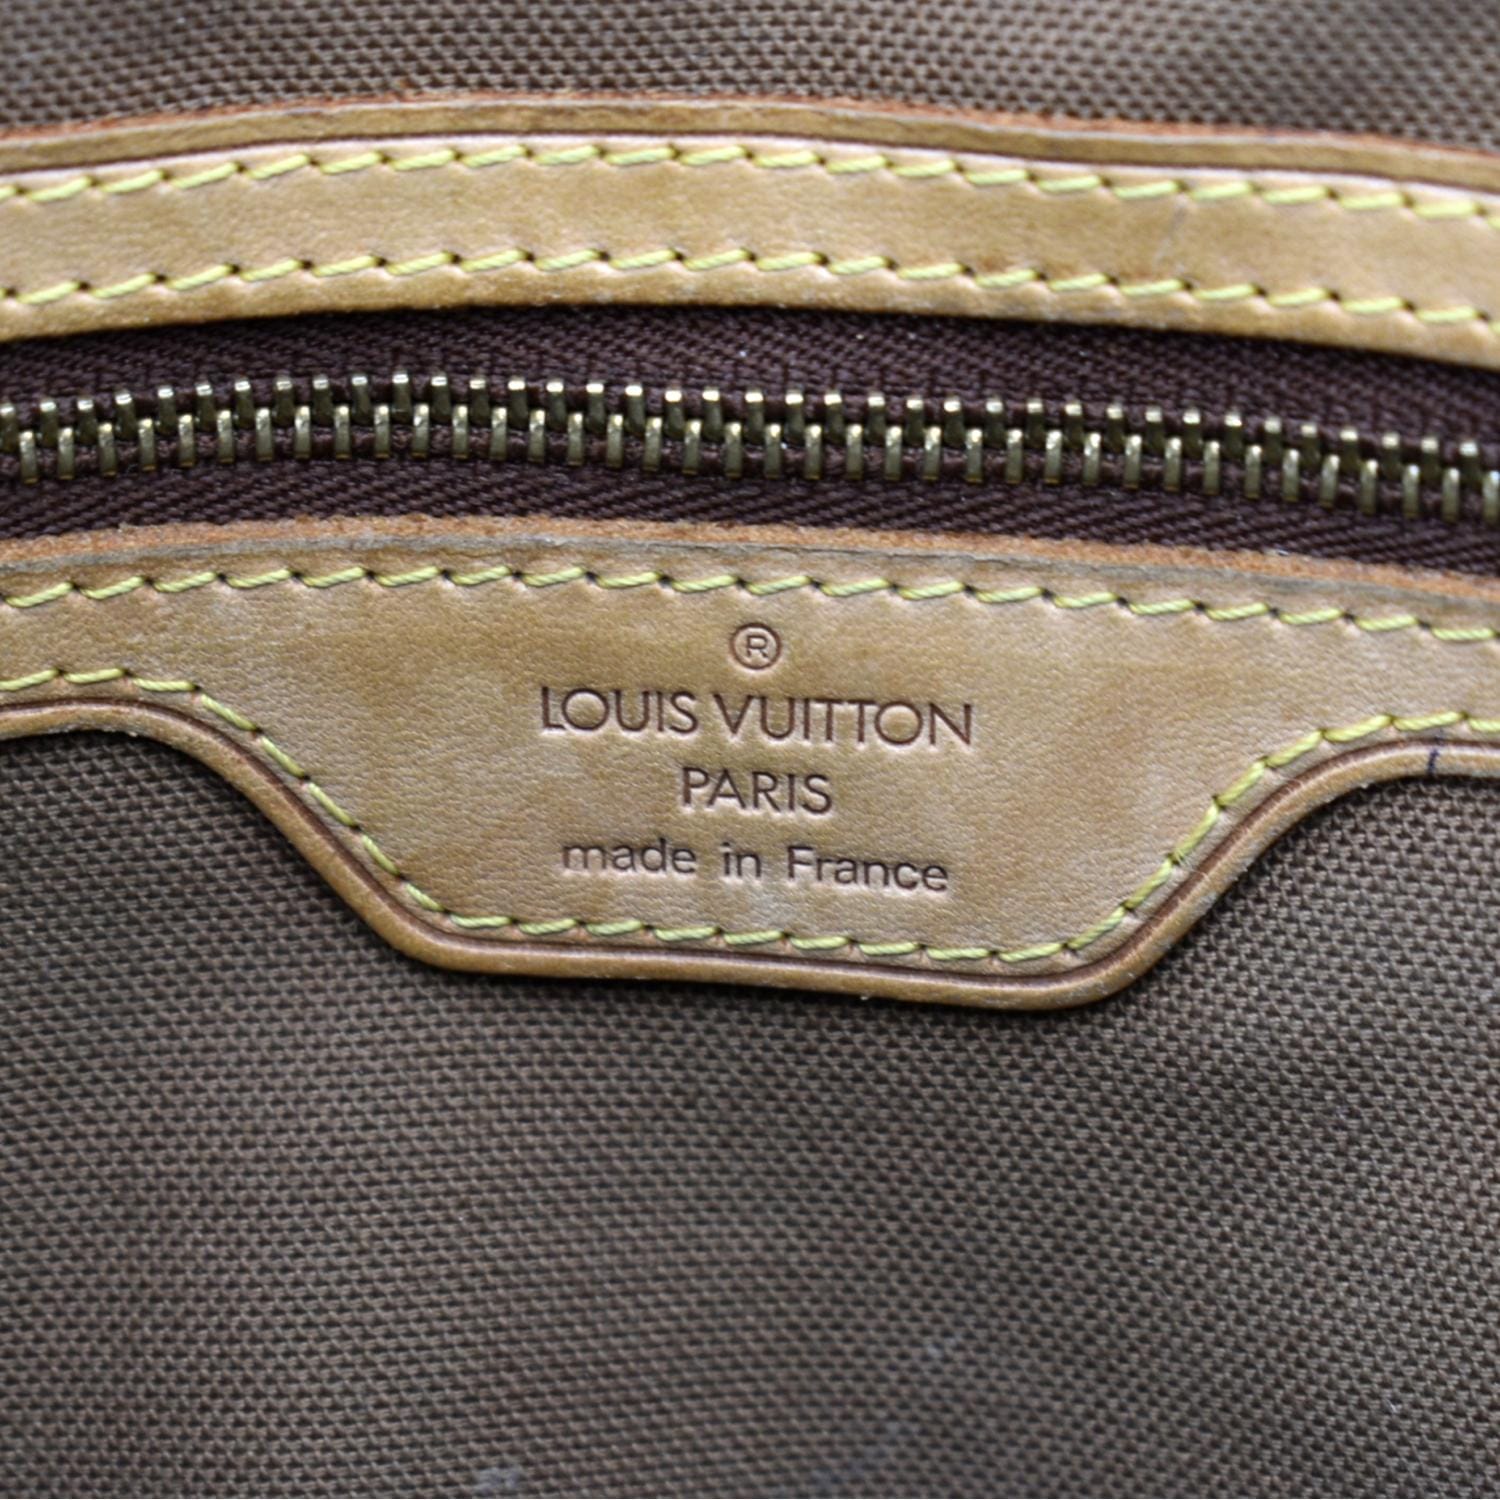 Authentic LOUIS VUITTON Vavin GM Monogram Shoulder Tote Bag Purse #51452